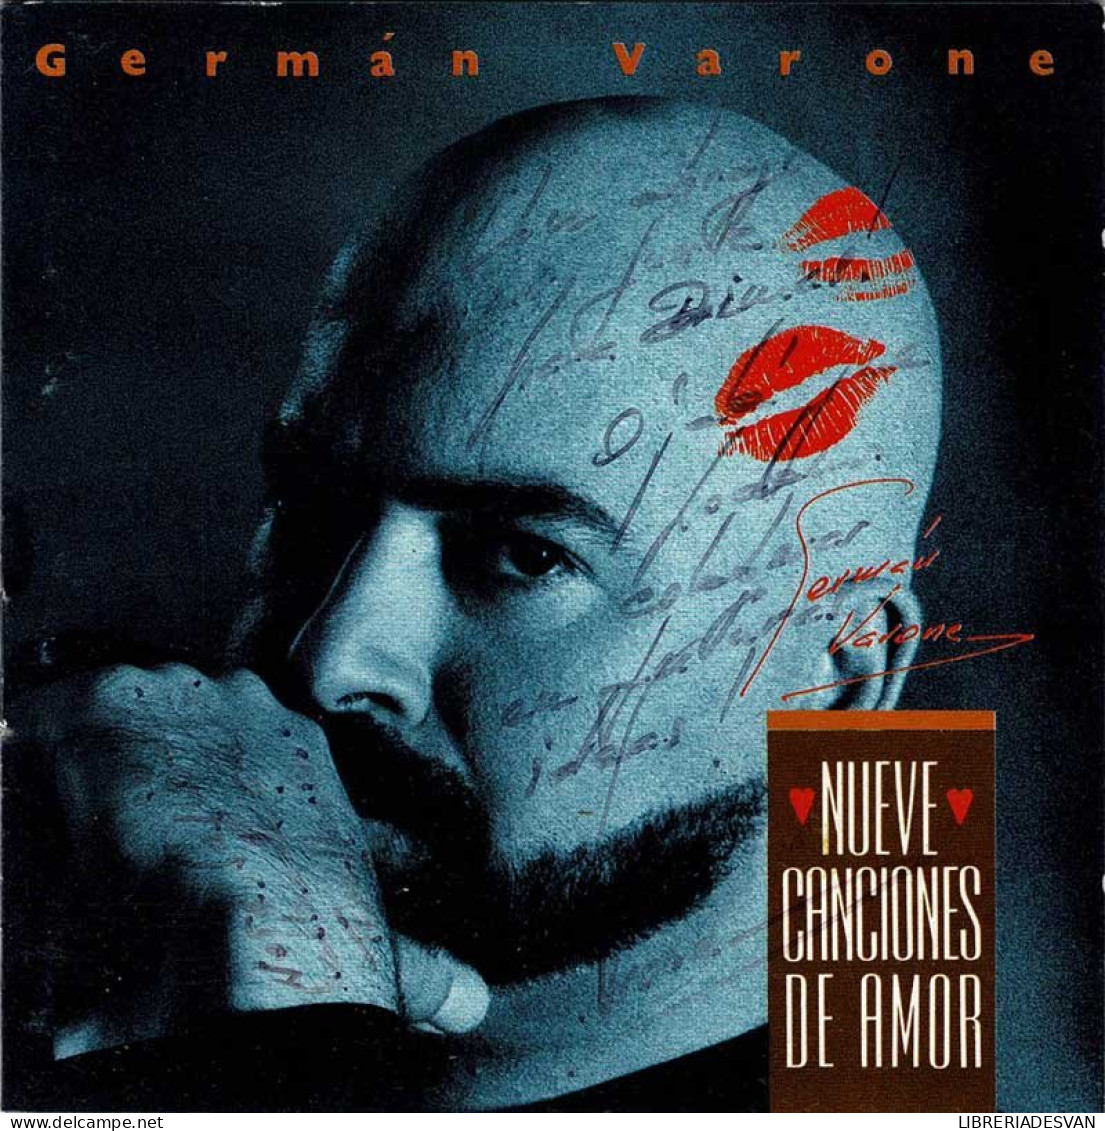 German Varone - Nueve Canciones De Amor. CD - Disco & Pop